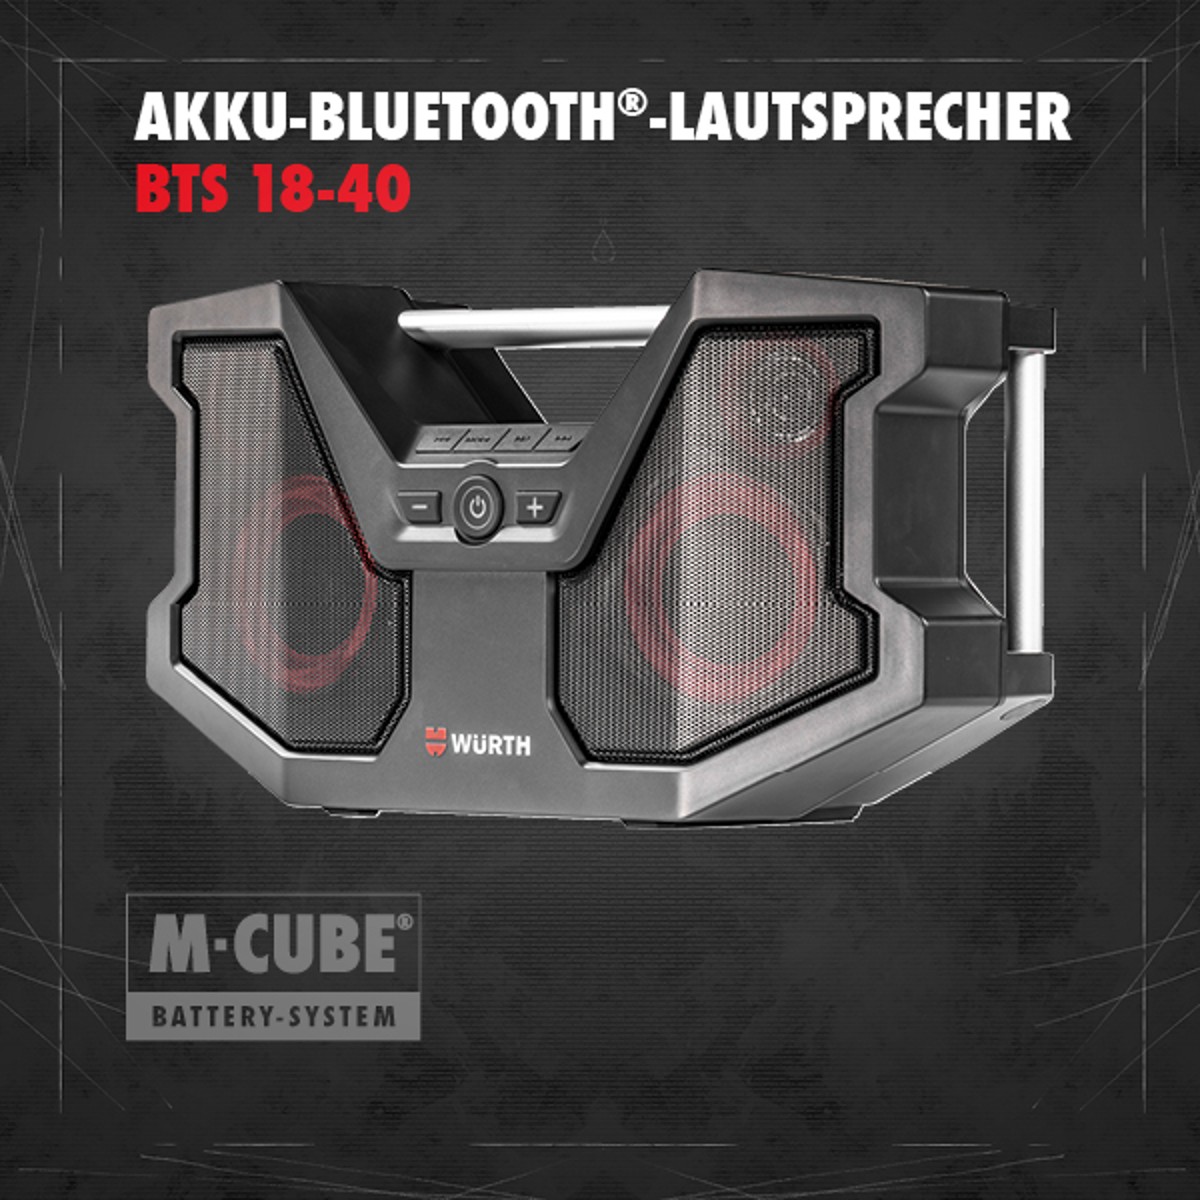 Akku-Bluetoothlautsprecher BTS 18-40 M-CUBE